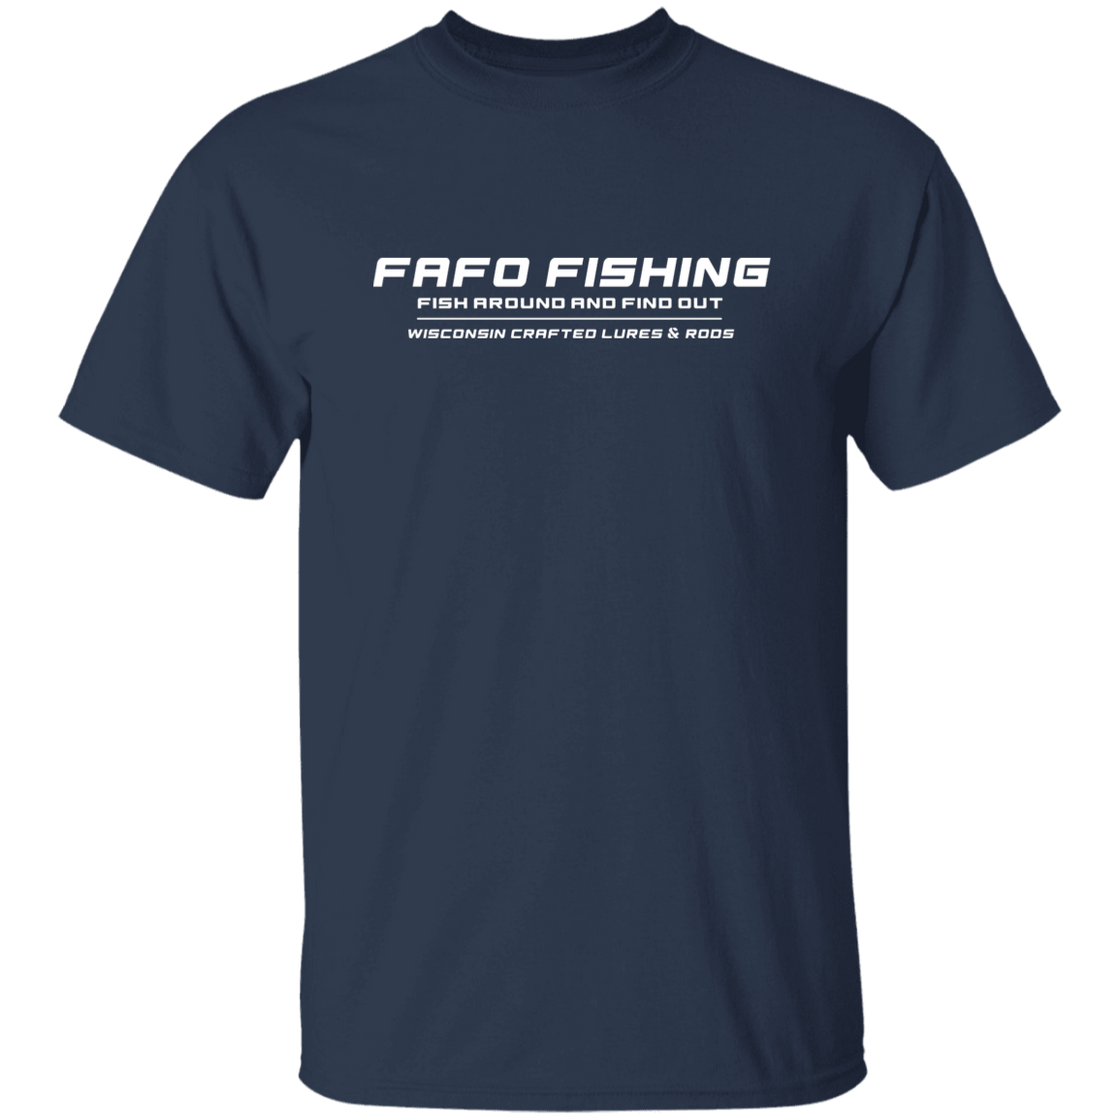 FAFO FISHING T-Shirt Whit Logo